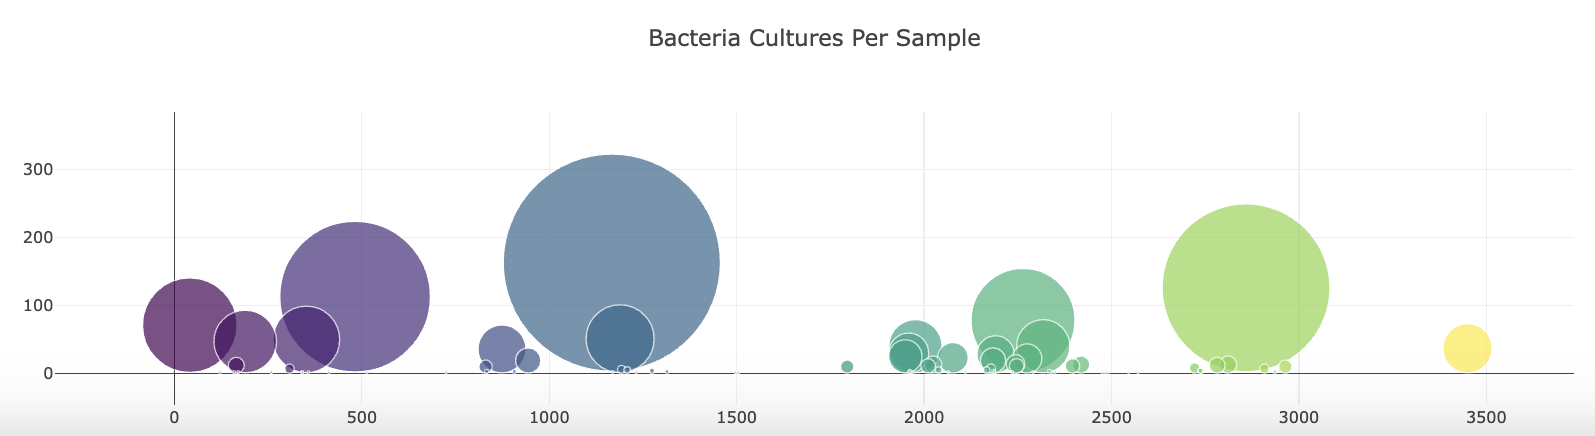 bacteria_cultures_per_sample_940